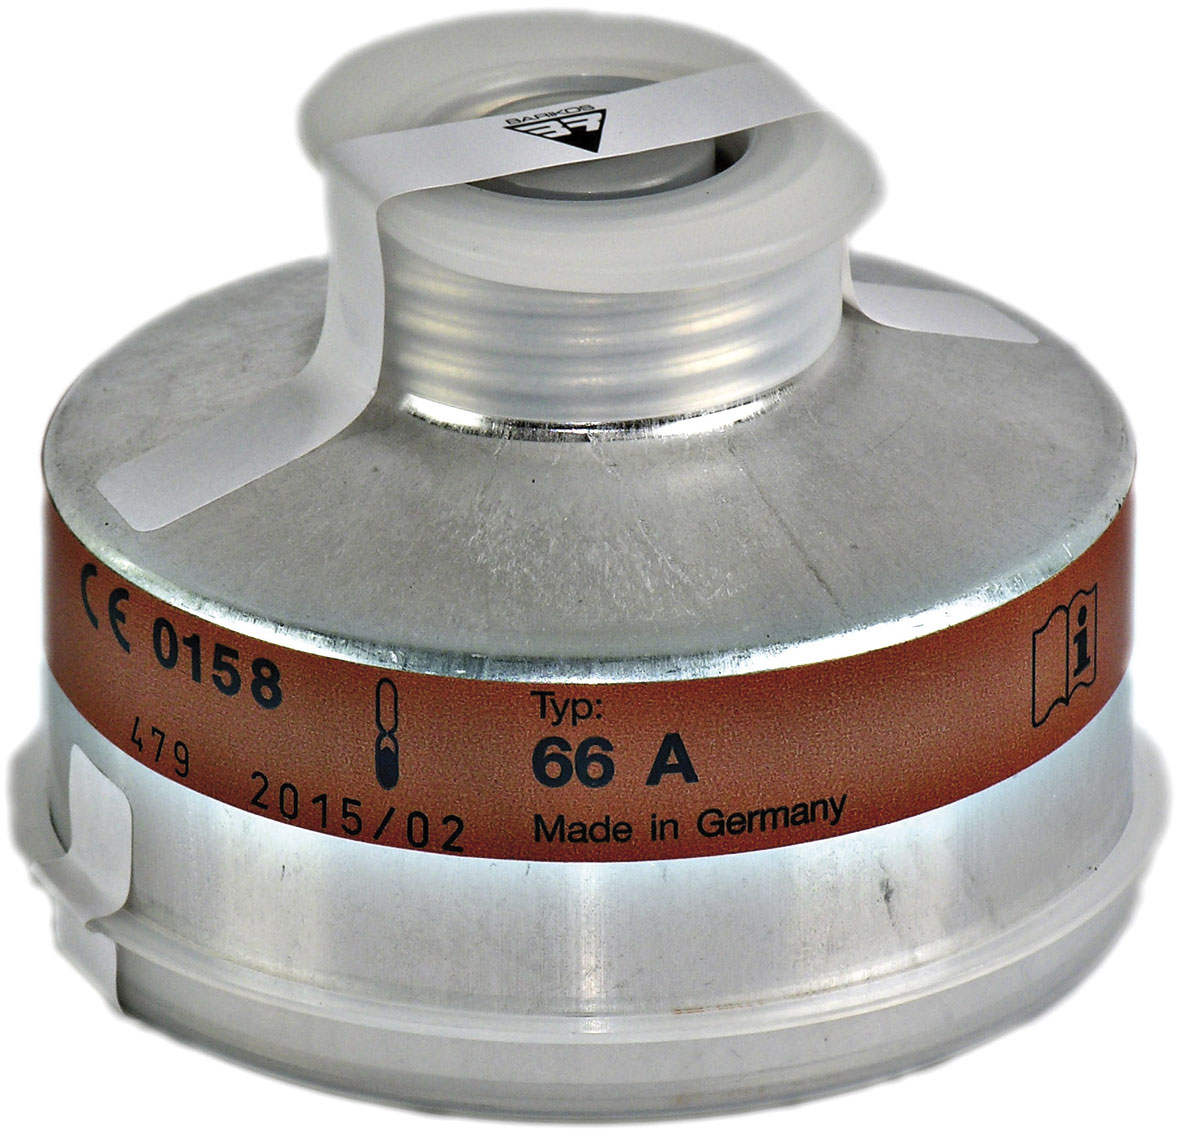 Filtro respiratorio rosca para vapores de mercurio y partículas tóxicas. Clase protección: Hg-P3. BARIKOS